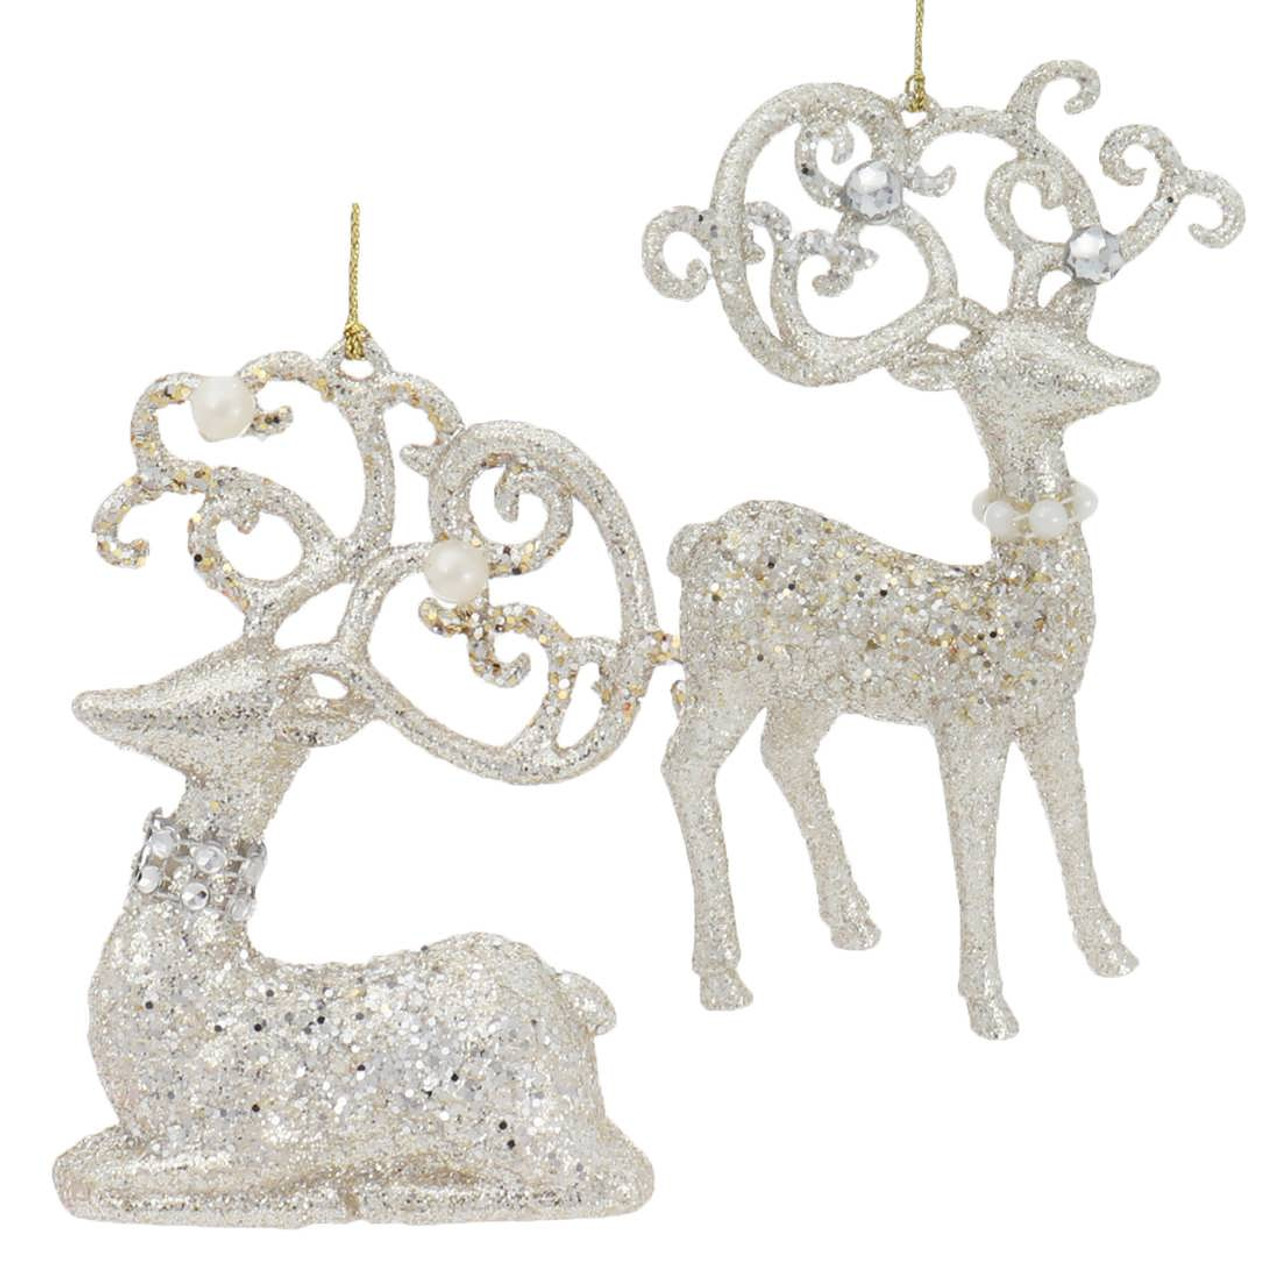 Deer Ornaments, Elk, Deer, Reindeer Christmas Ornaments